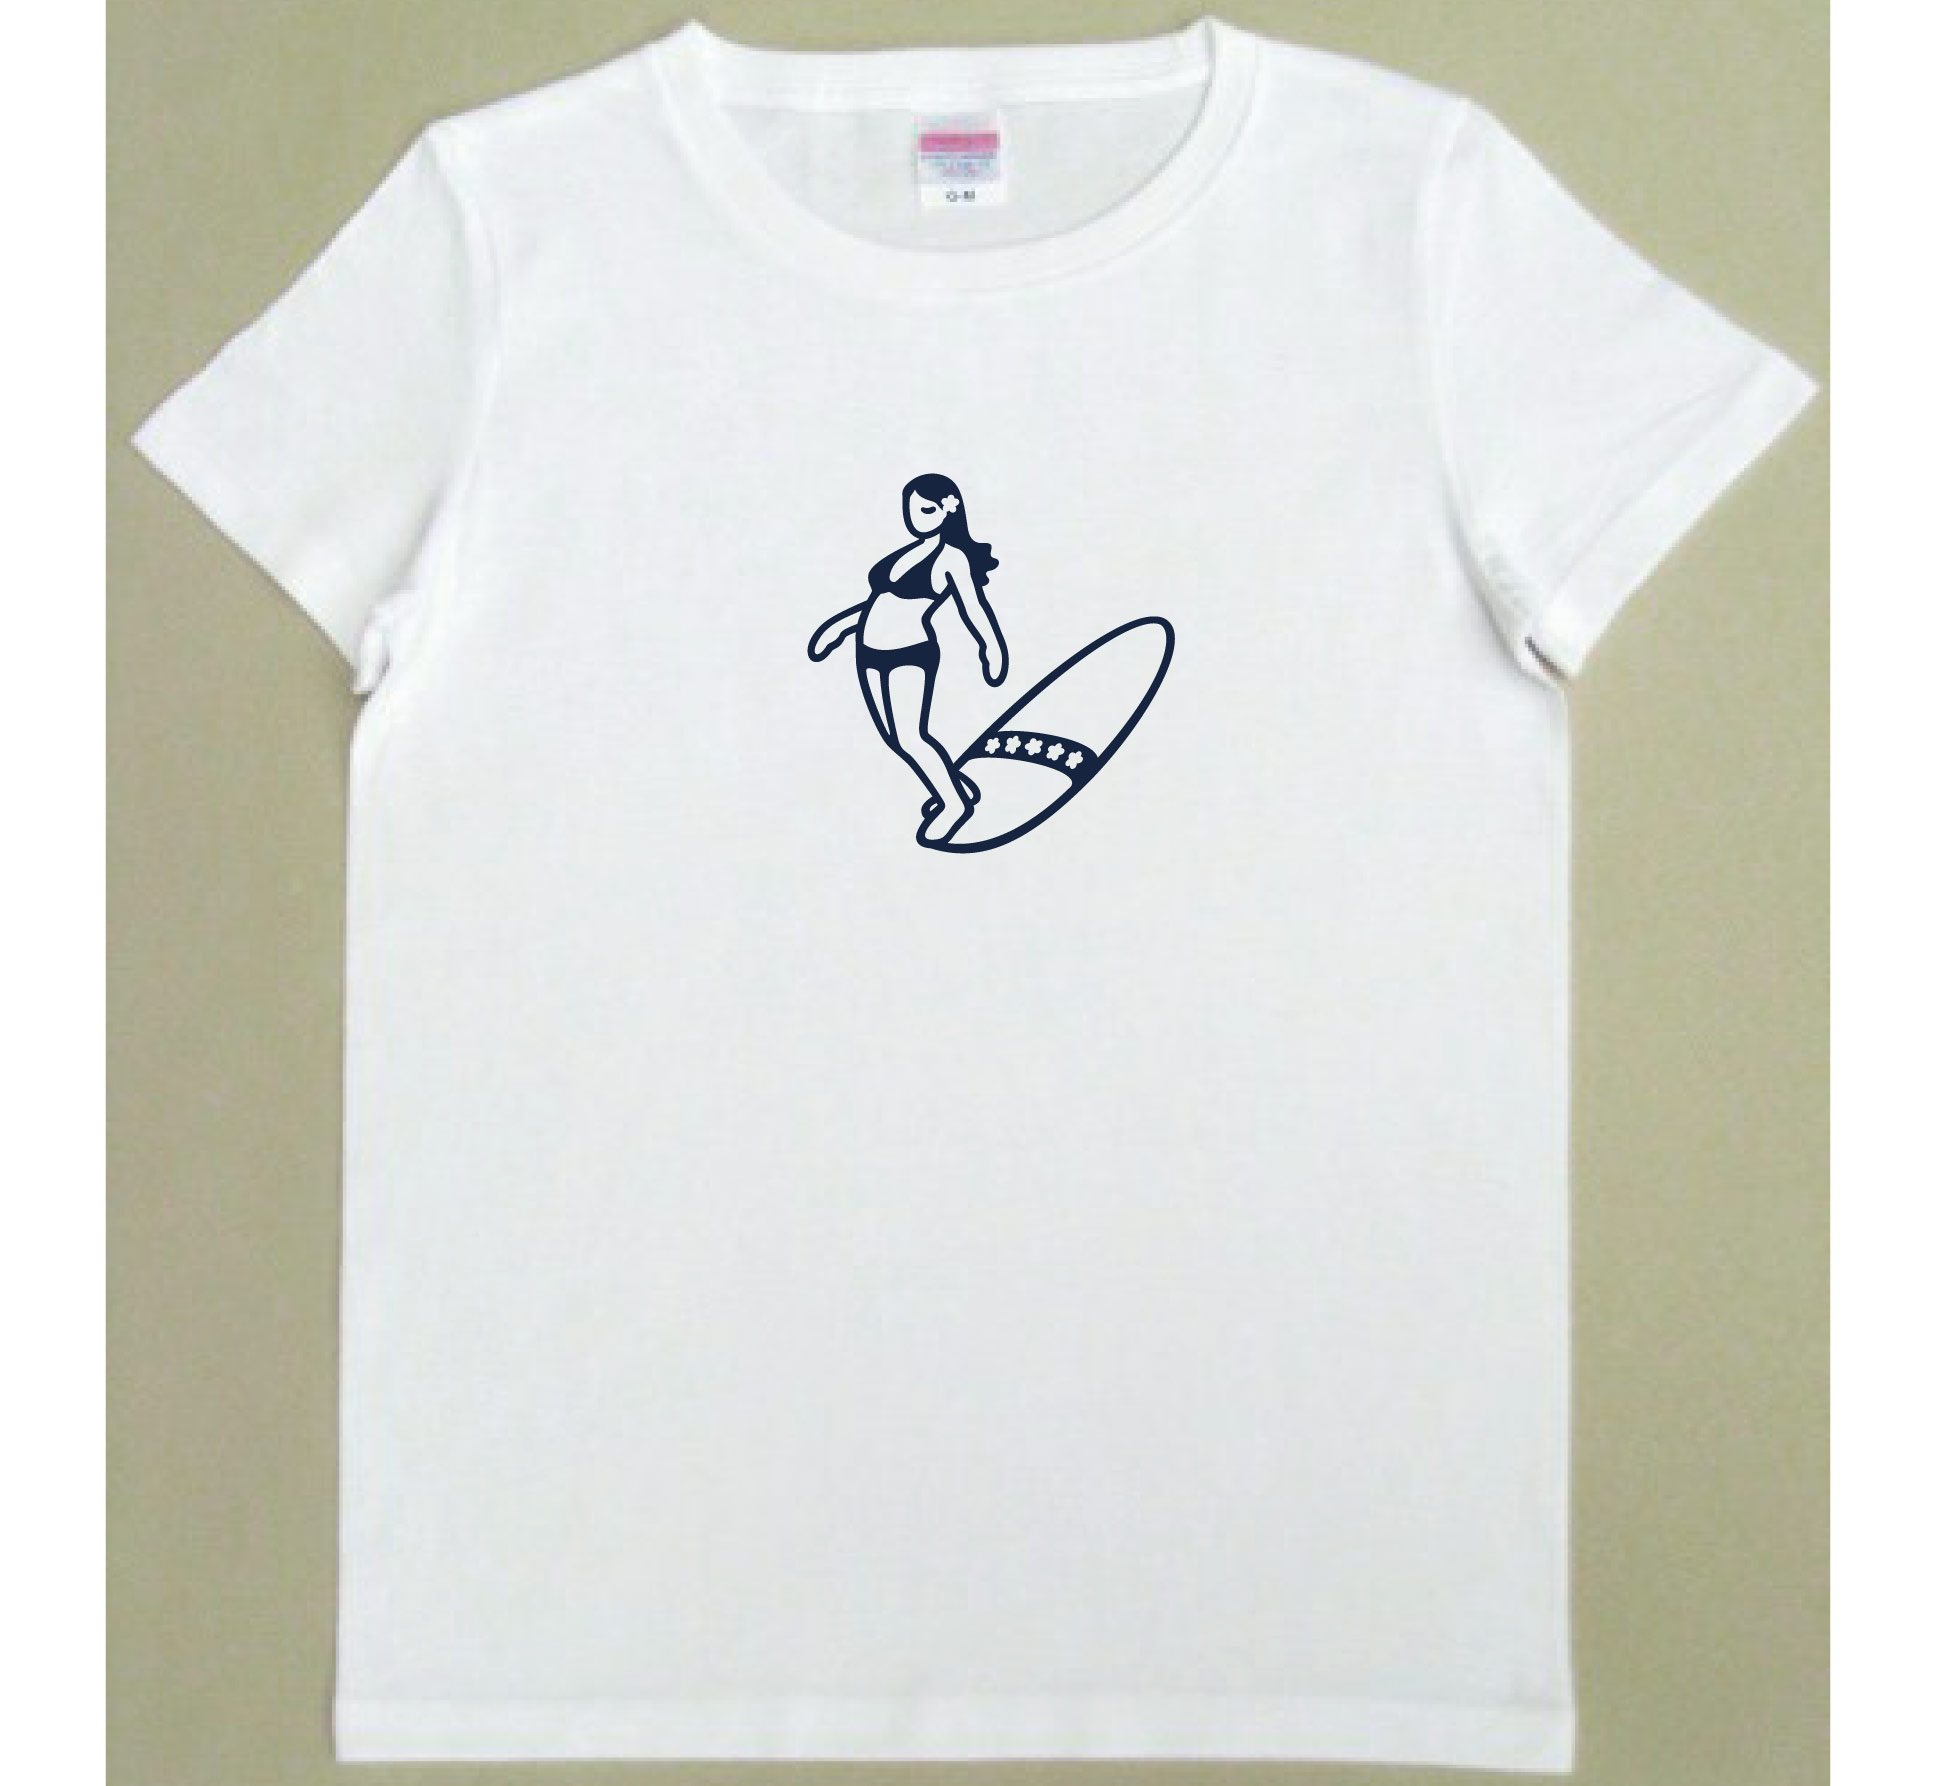 サーファーガール 【NOSE RIDE】 Tシャツ レディース [白/グレー] ゆる波オリジナル SURF グッズ 雑貨 サーフT